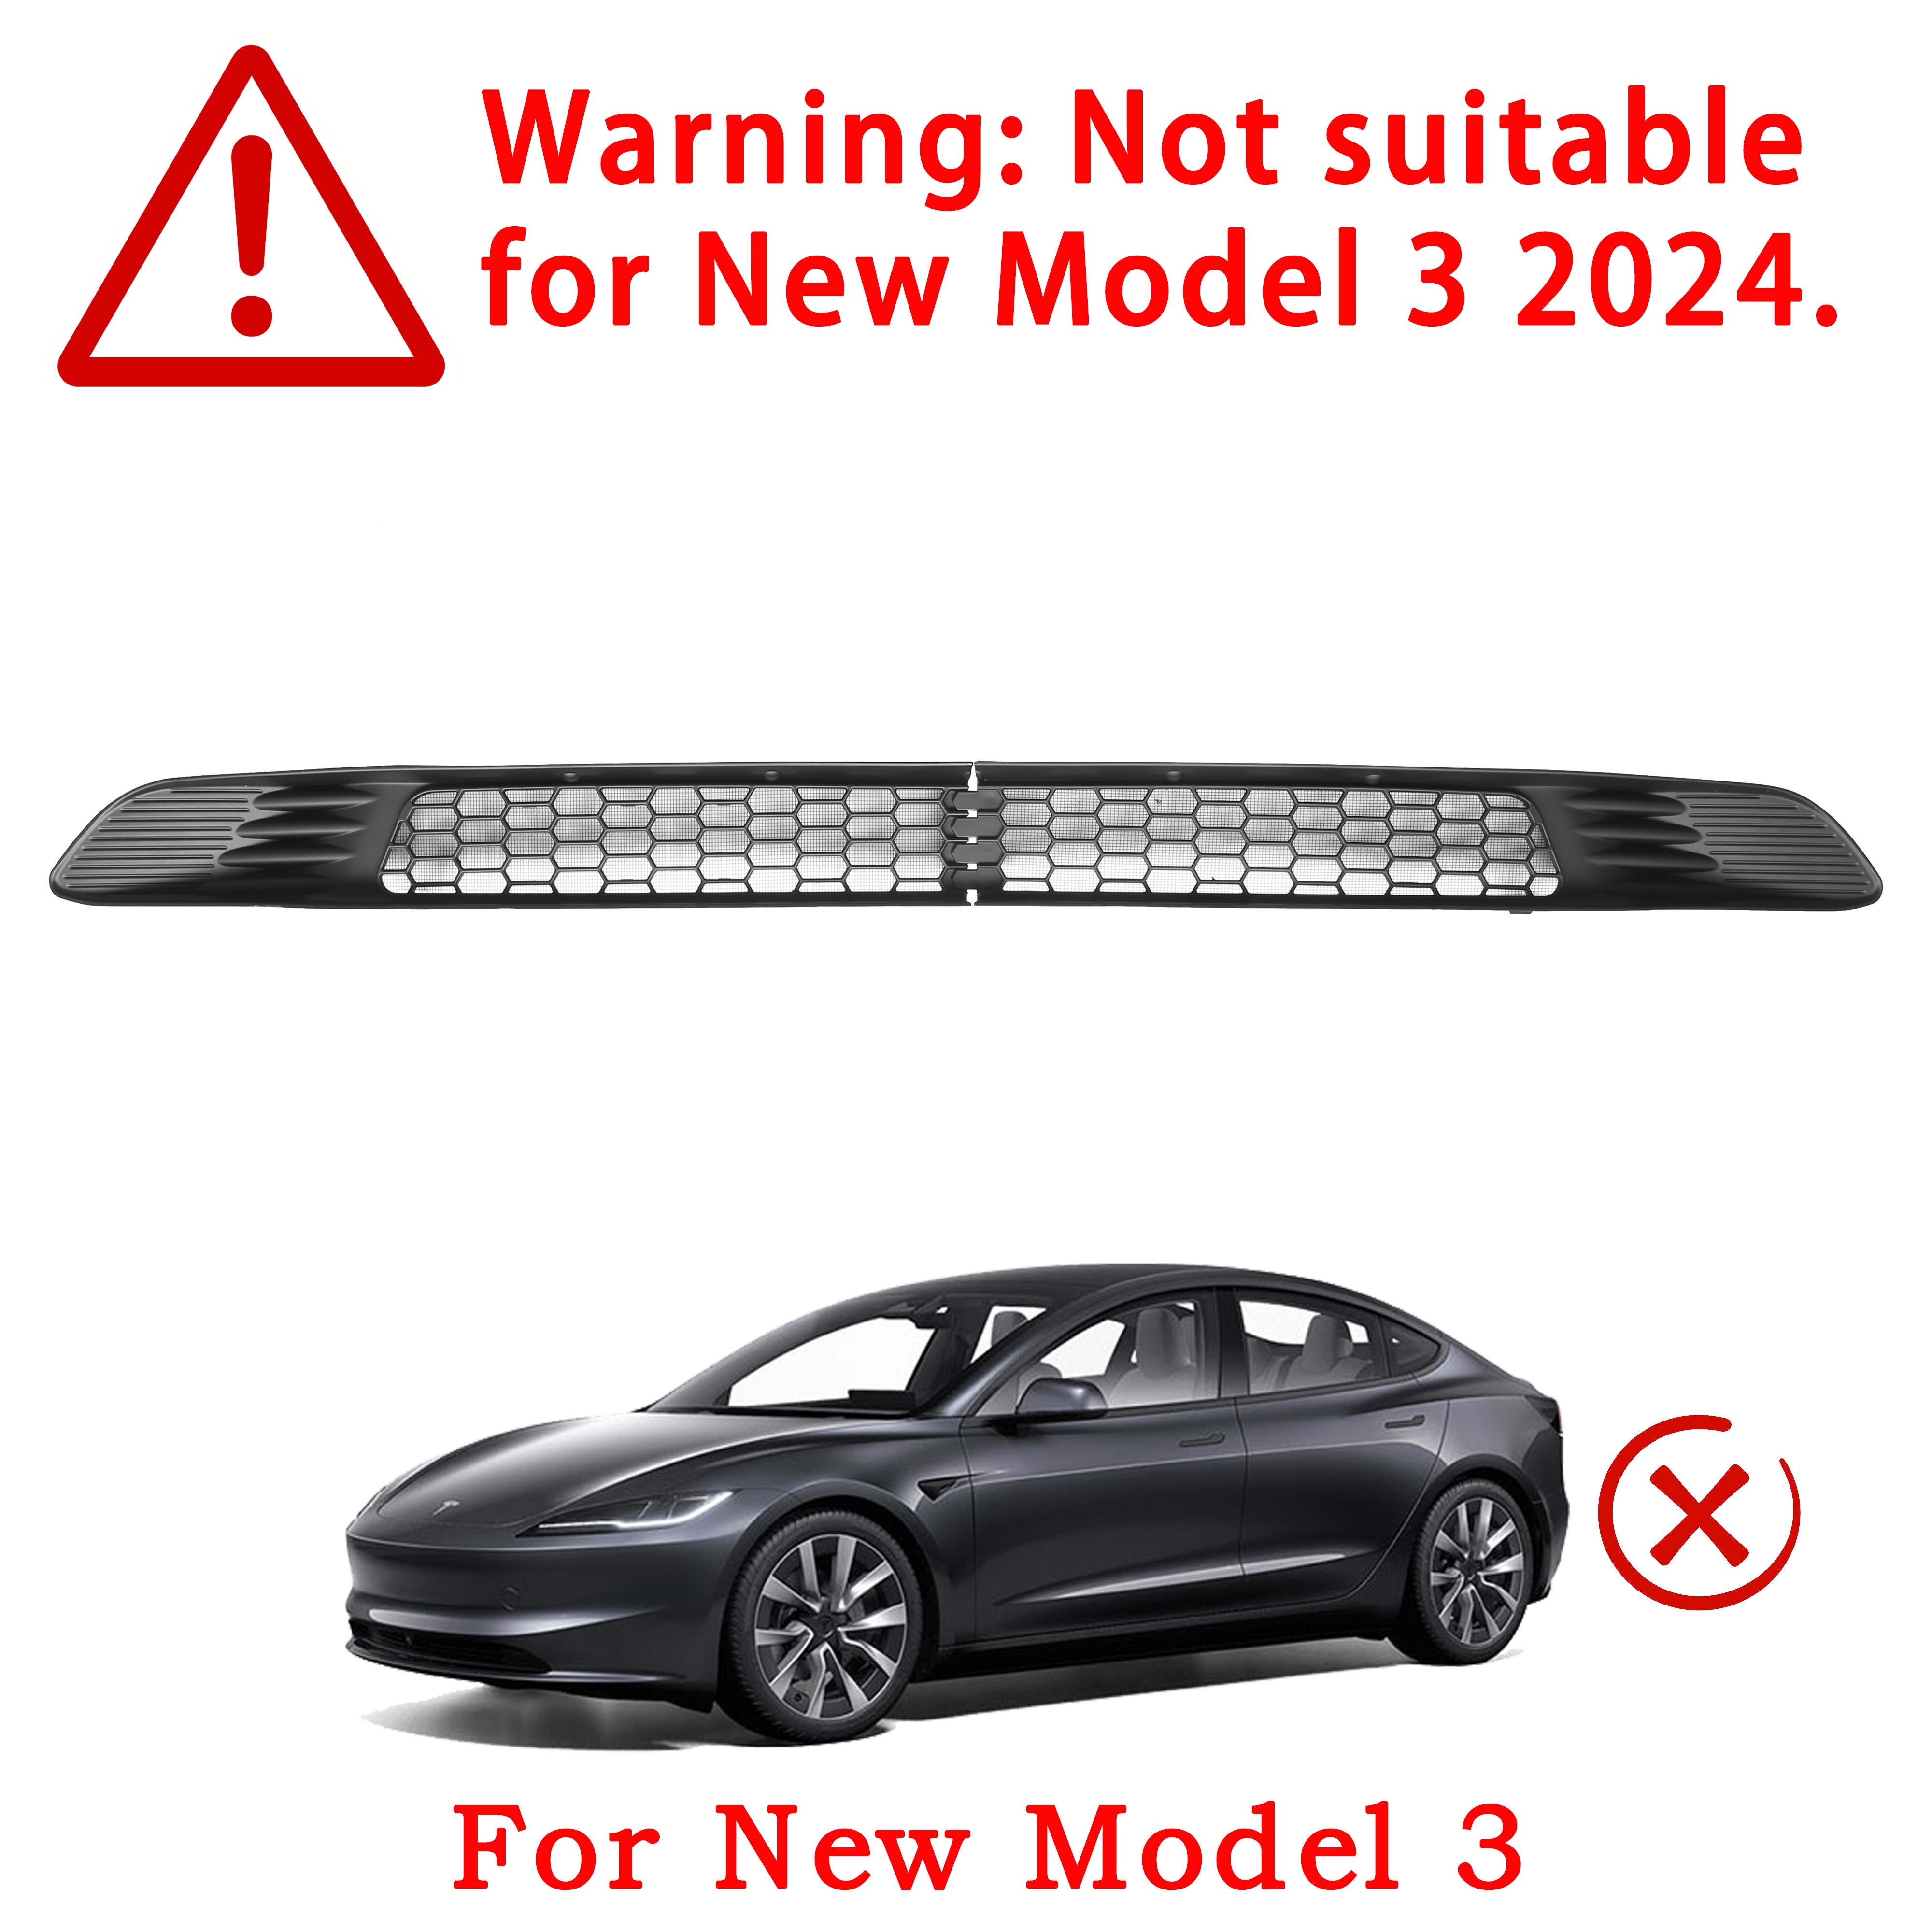 For Tesla Model 3 Model Y Front Bumper Hood Vent Grille Net